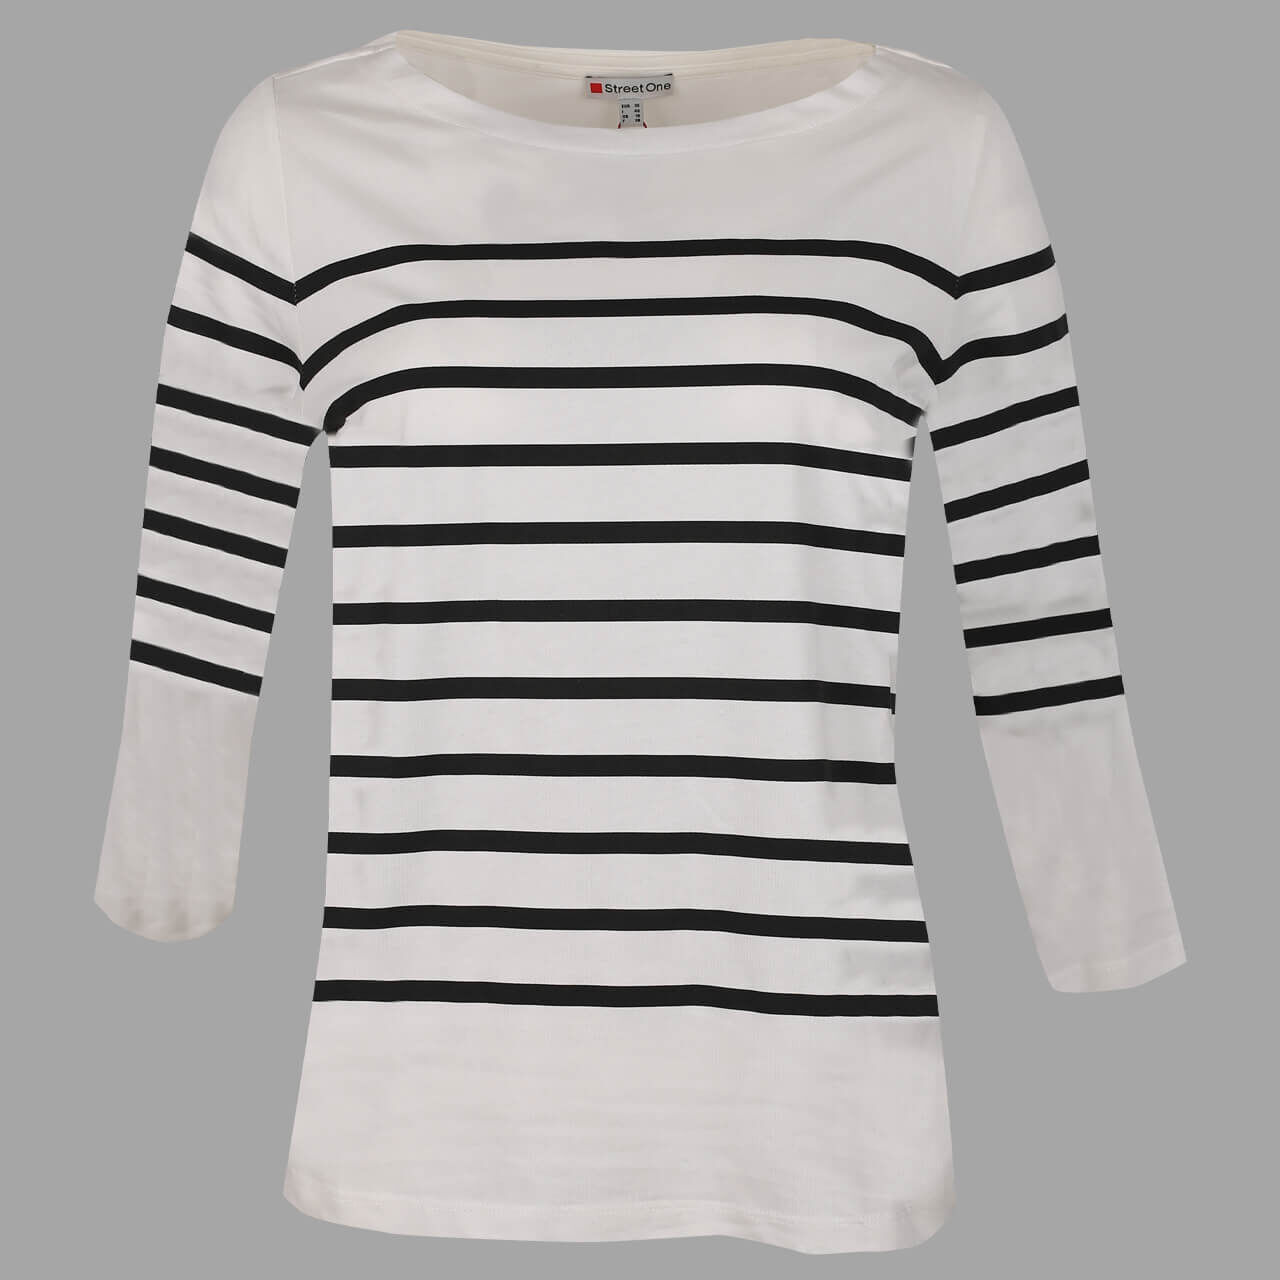 Street One Printed Stripe 3/4 Arm Shirt für Damen in Weiß gestreift, FarbNr.: 20108